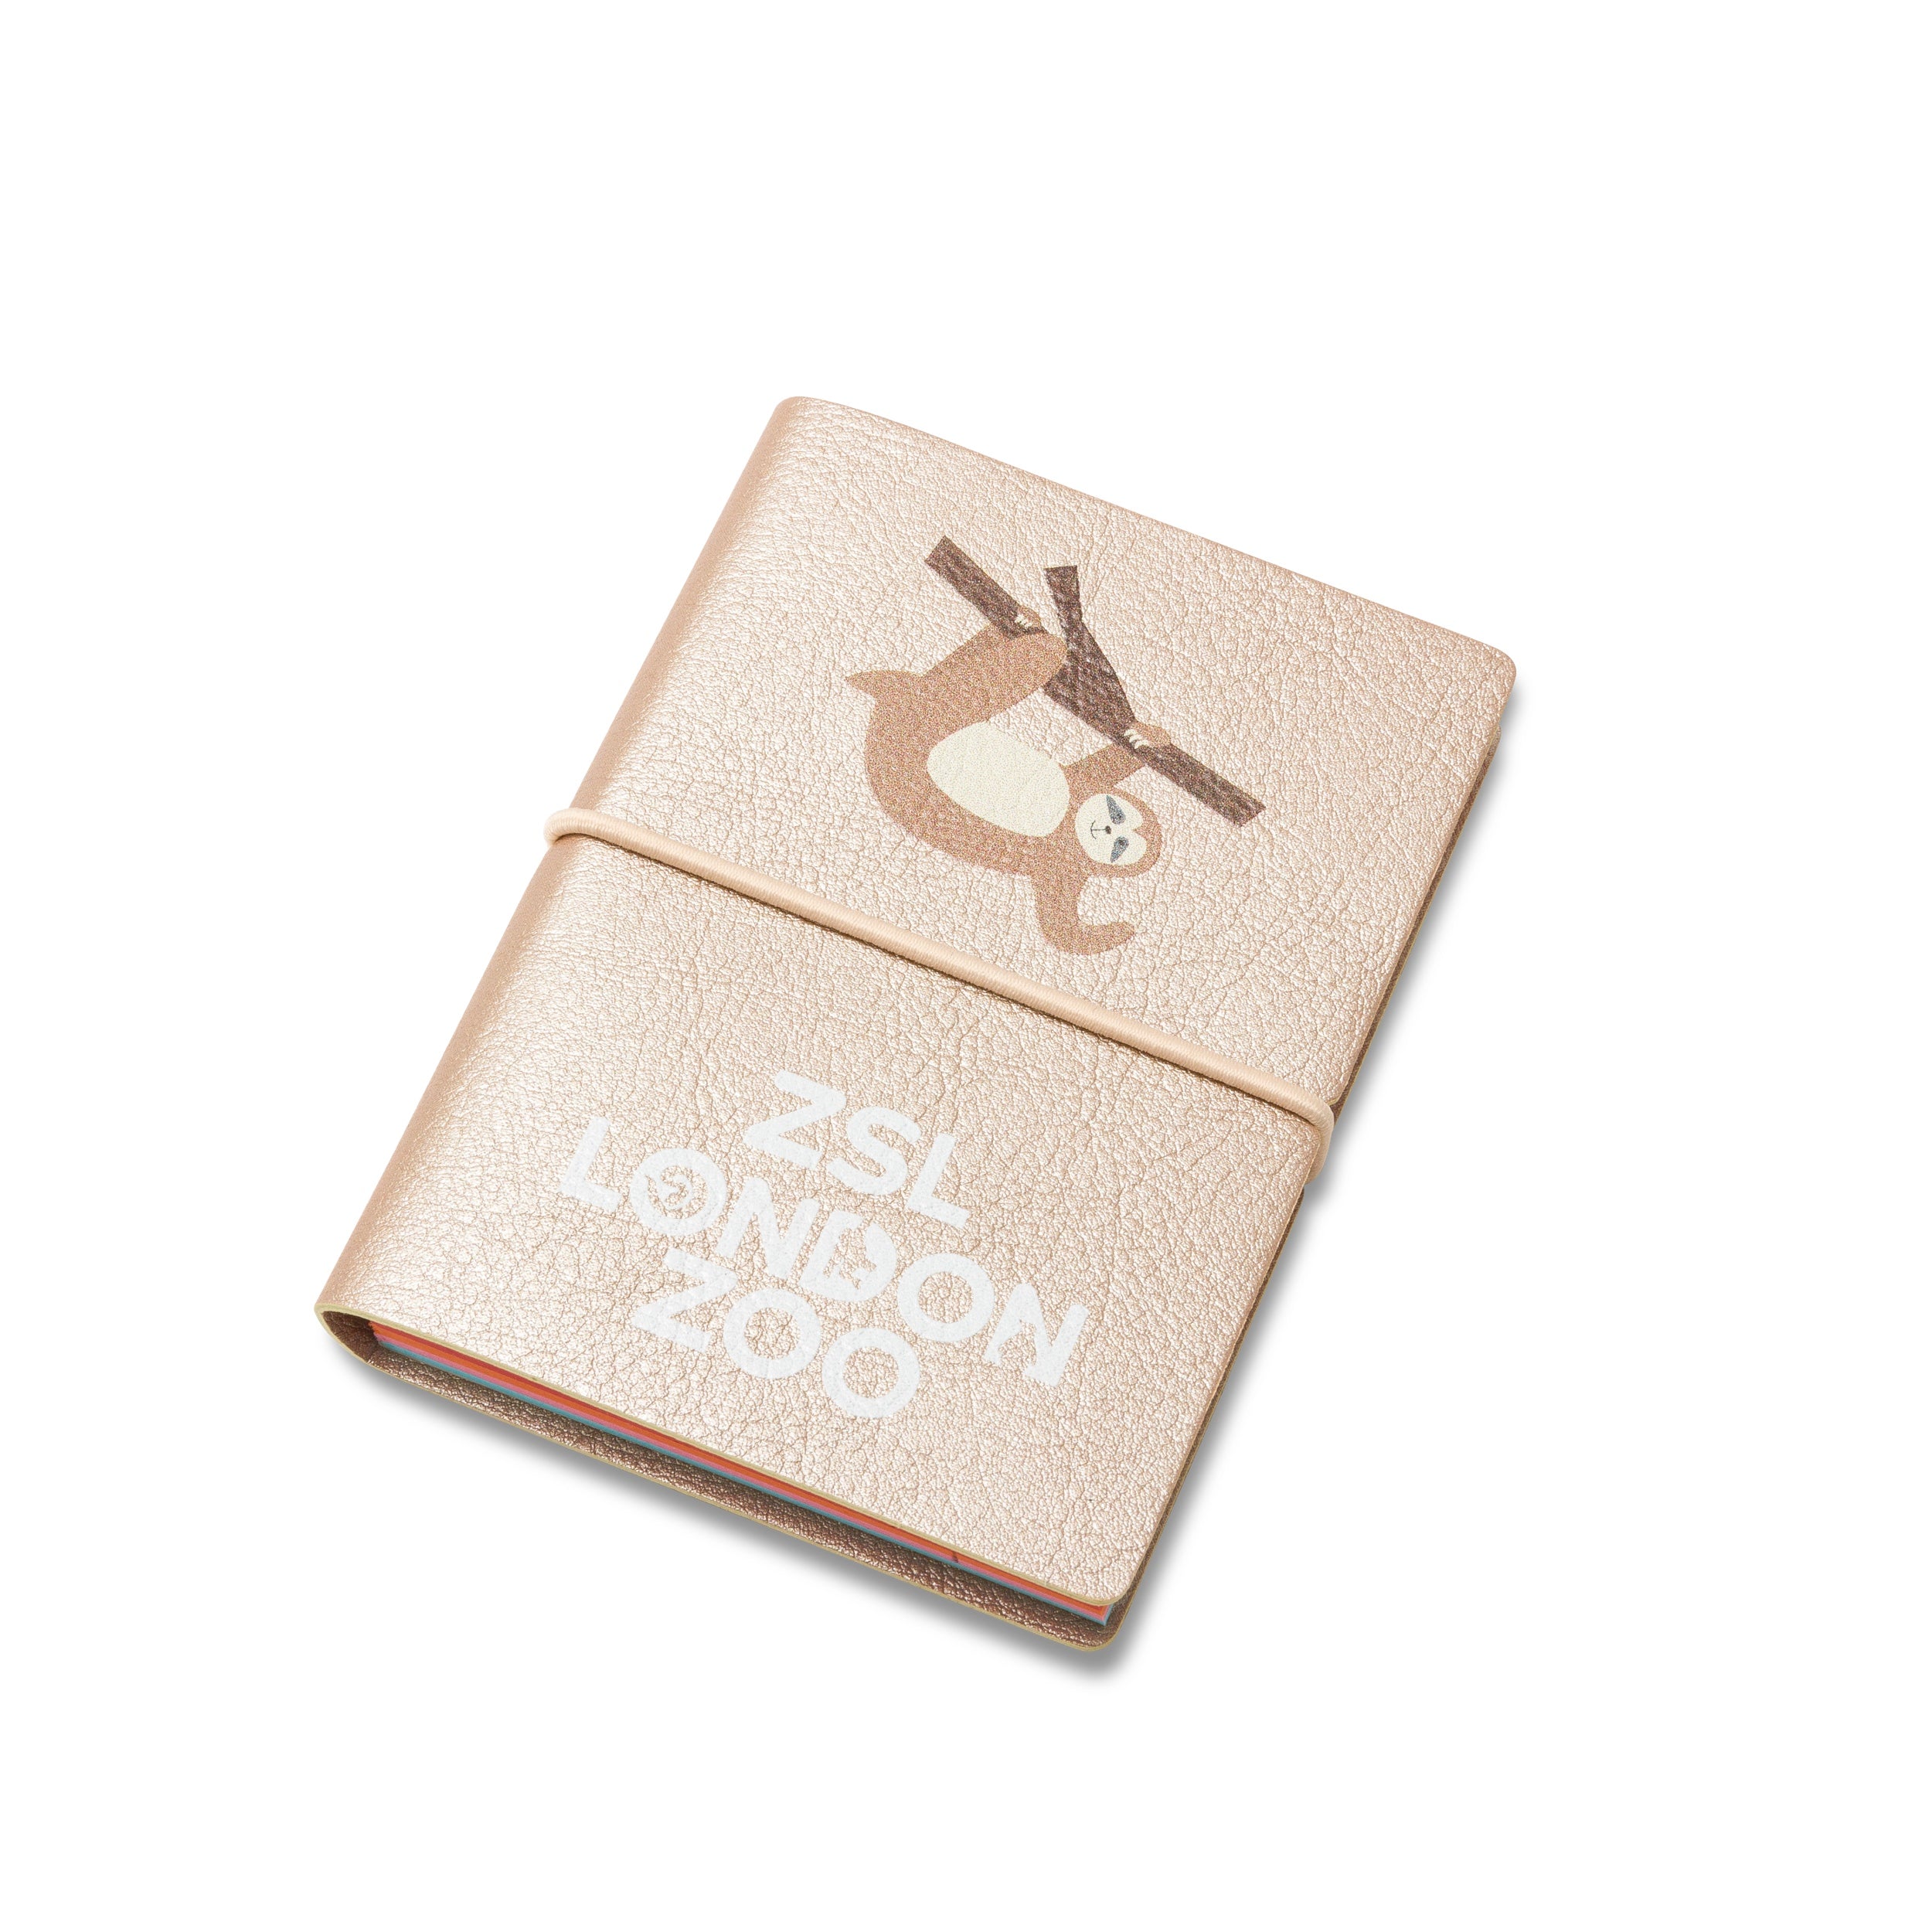 ZSL London Zoo Sloth Pocket Notebook, A7